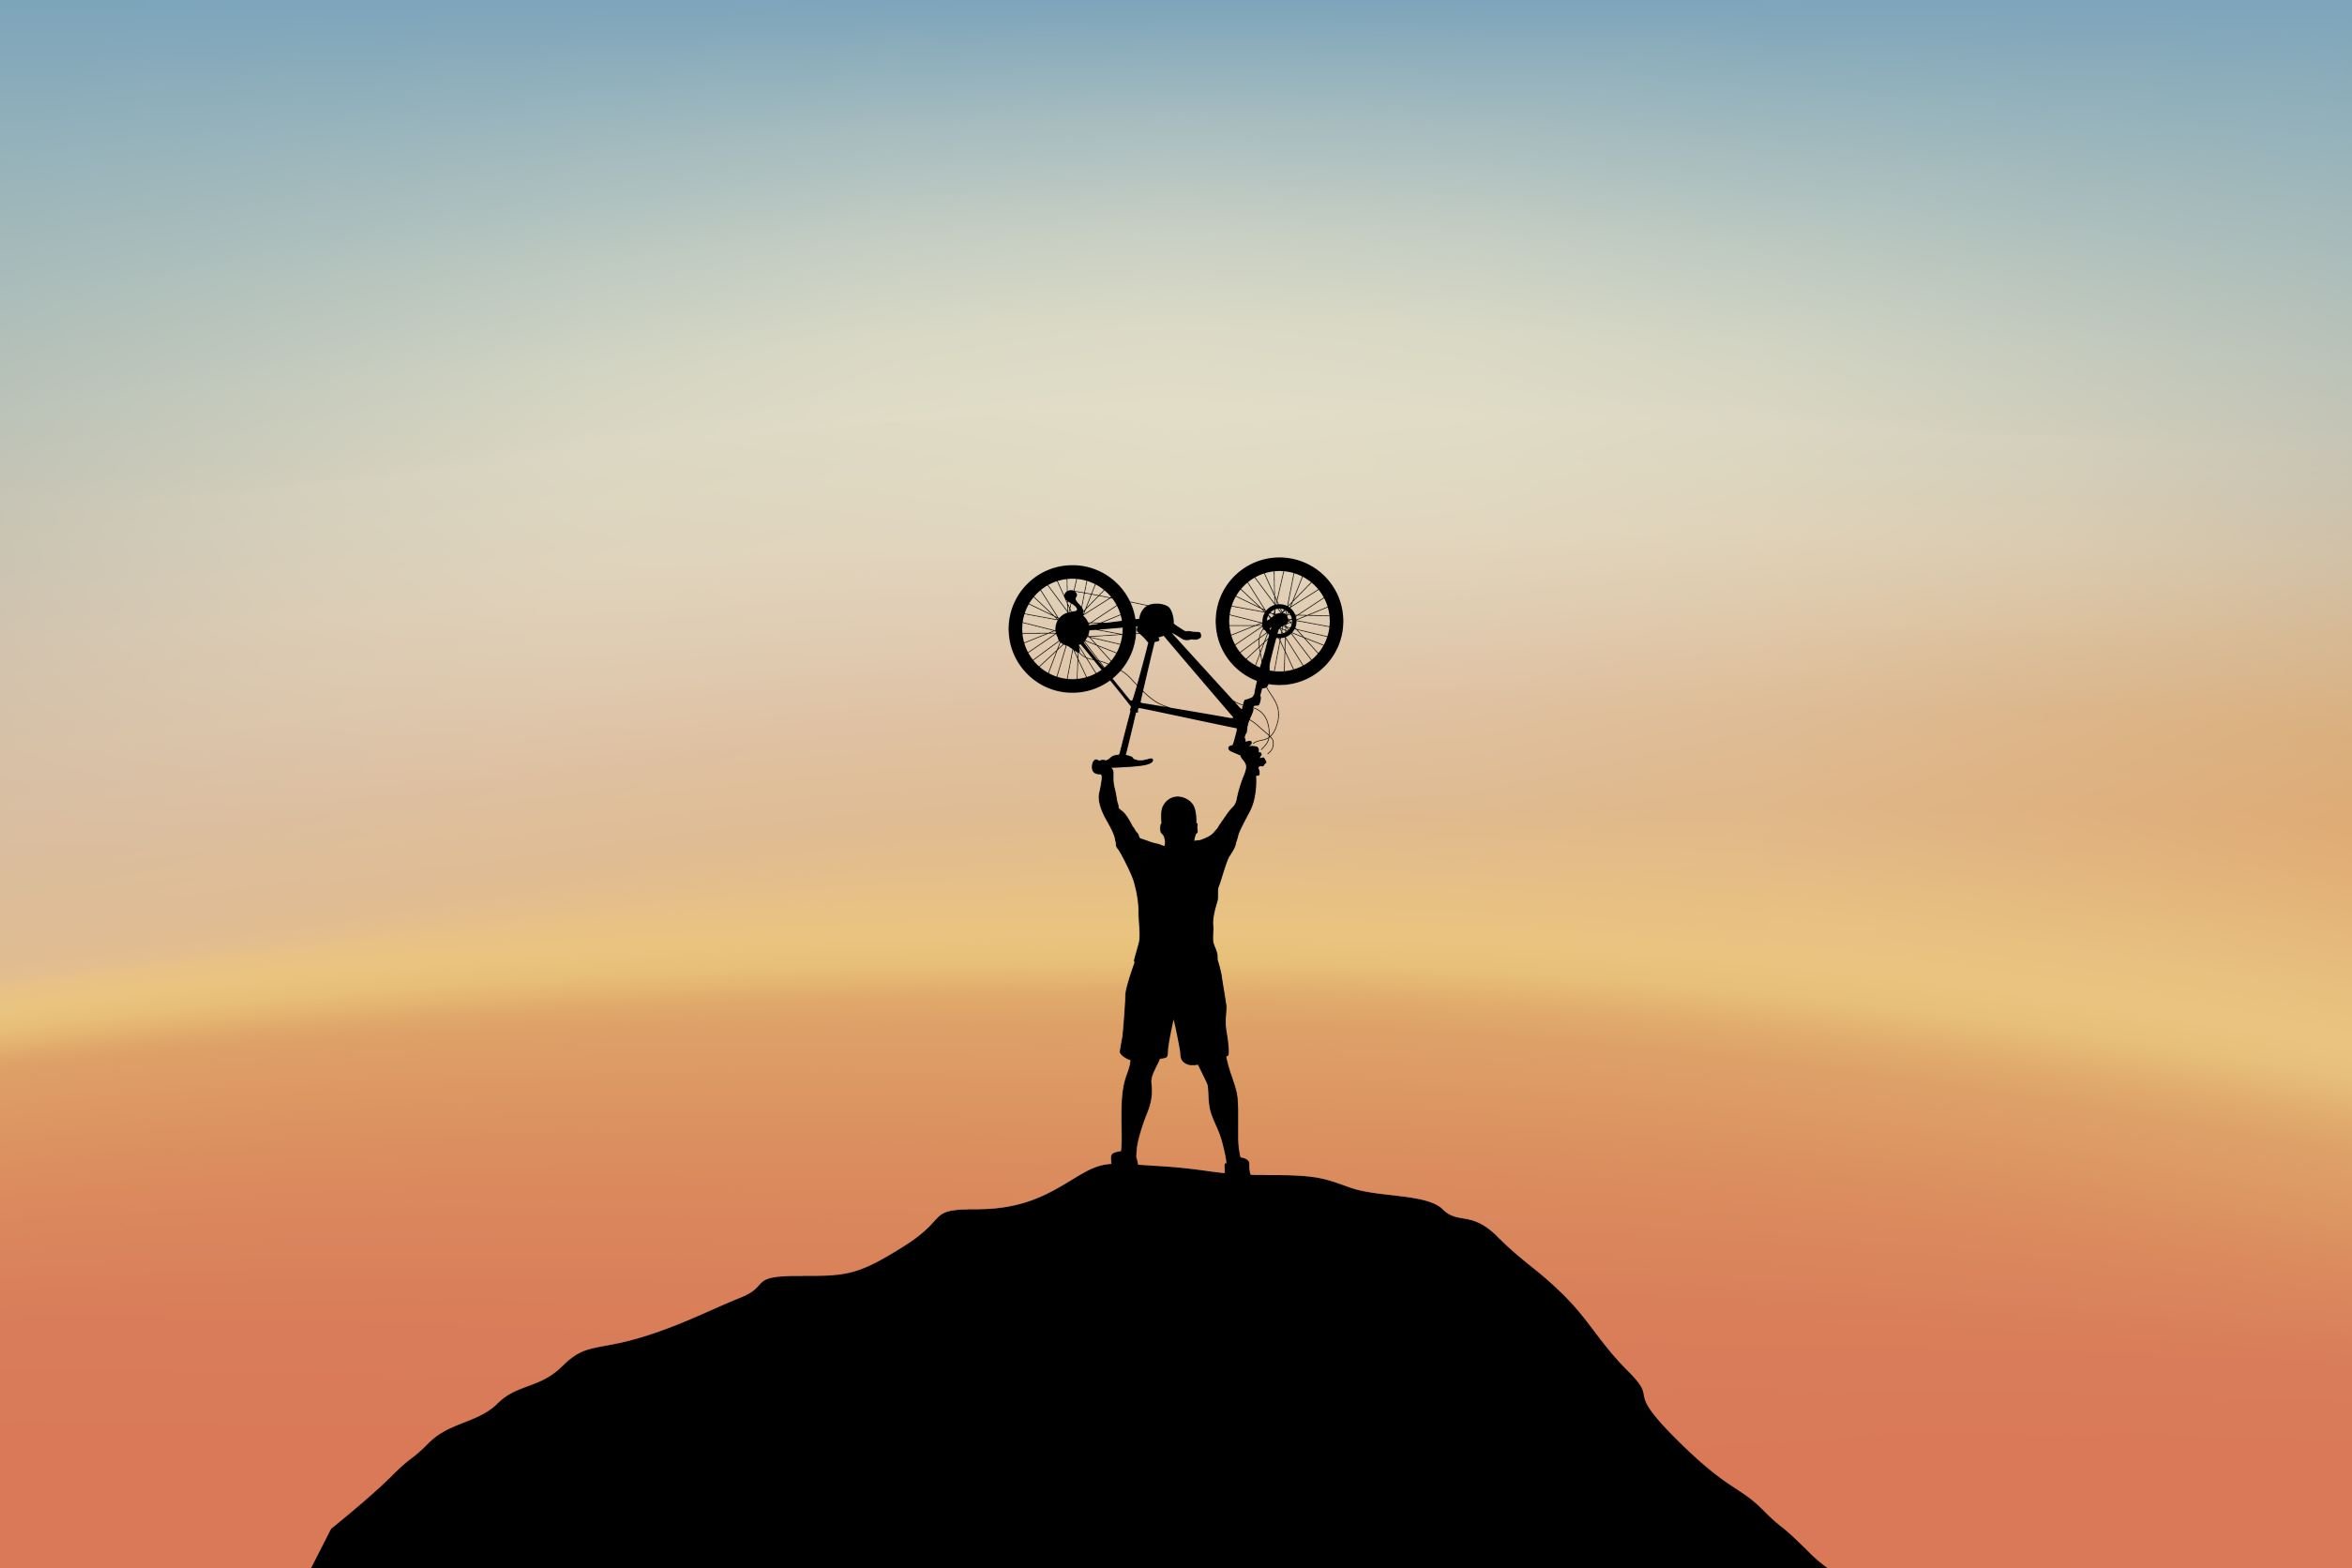 Un homme fait un geste gagnant, tenant un vélo de montagne au-dessus de sa tête au sommet d'une colline